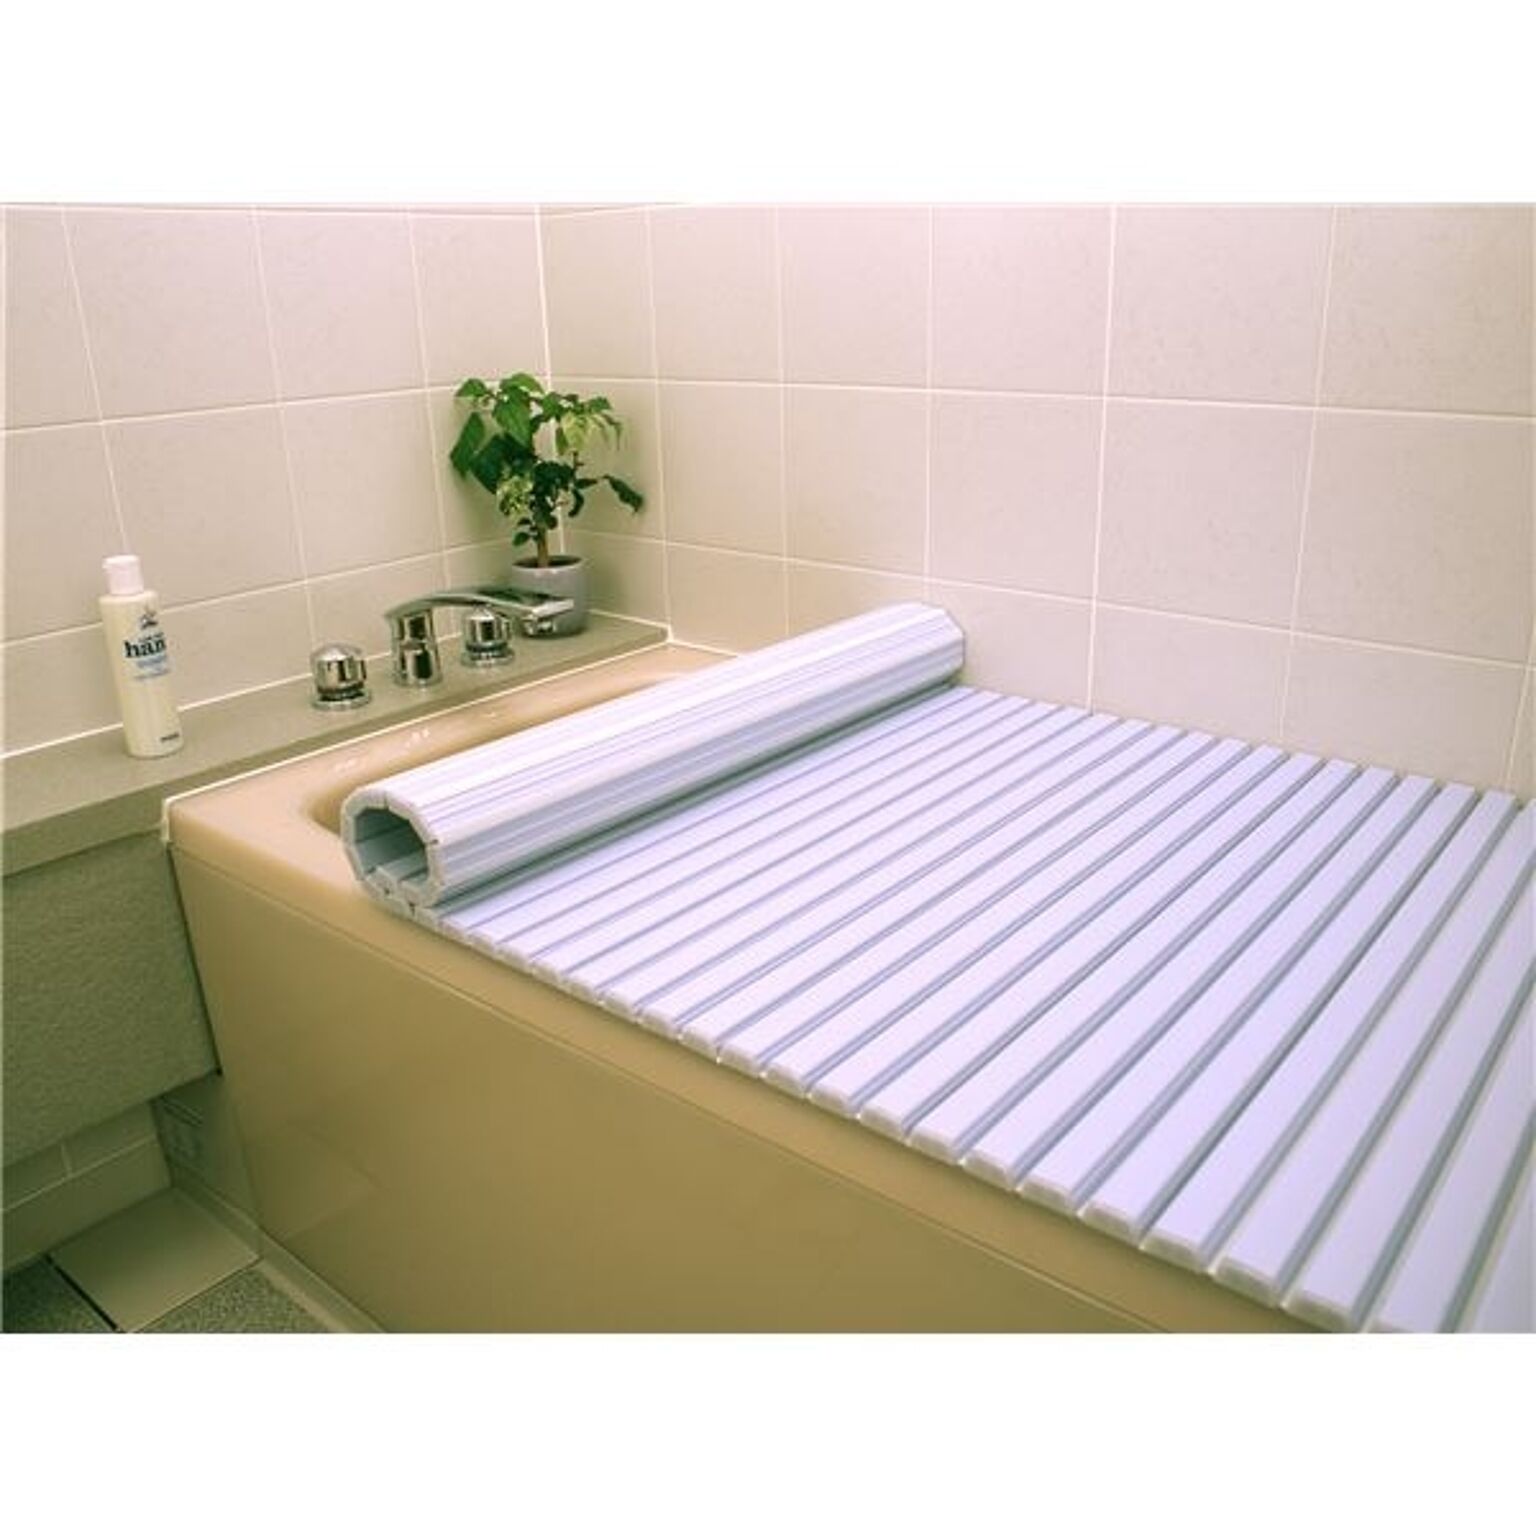 〔6個セット〕 風呂ふた 風呂フタ 75cm×140cm用 ブルー 軽量 シャッター式 巻きフタ SGマーク認定 日本製 浴室 風呂